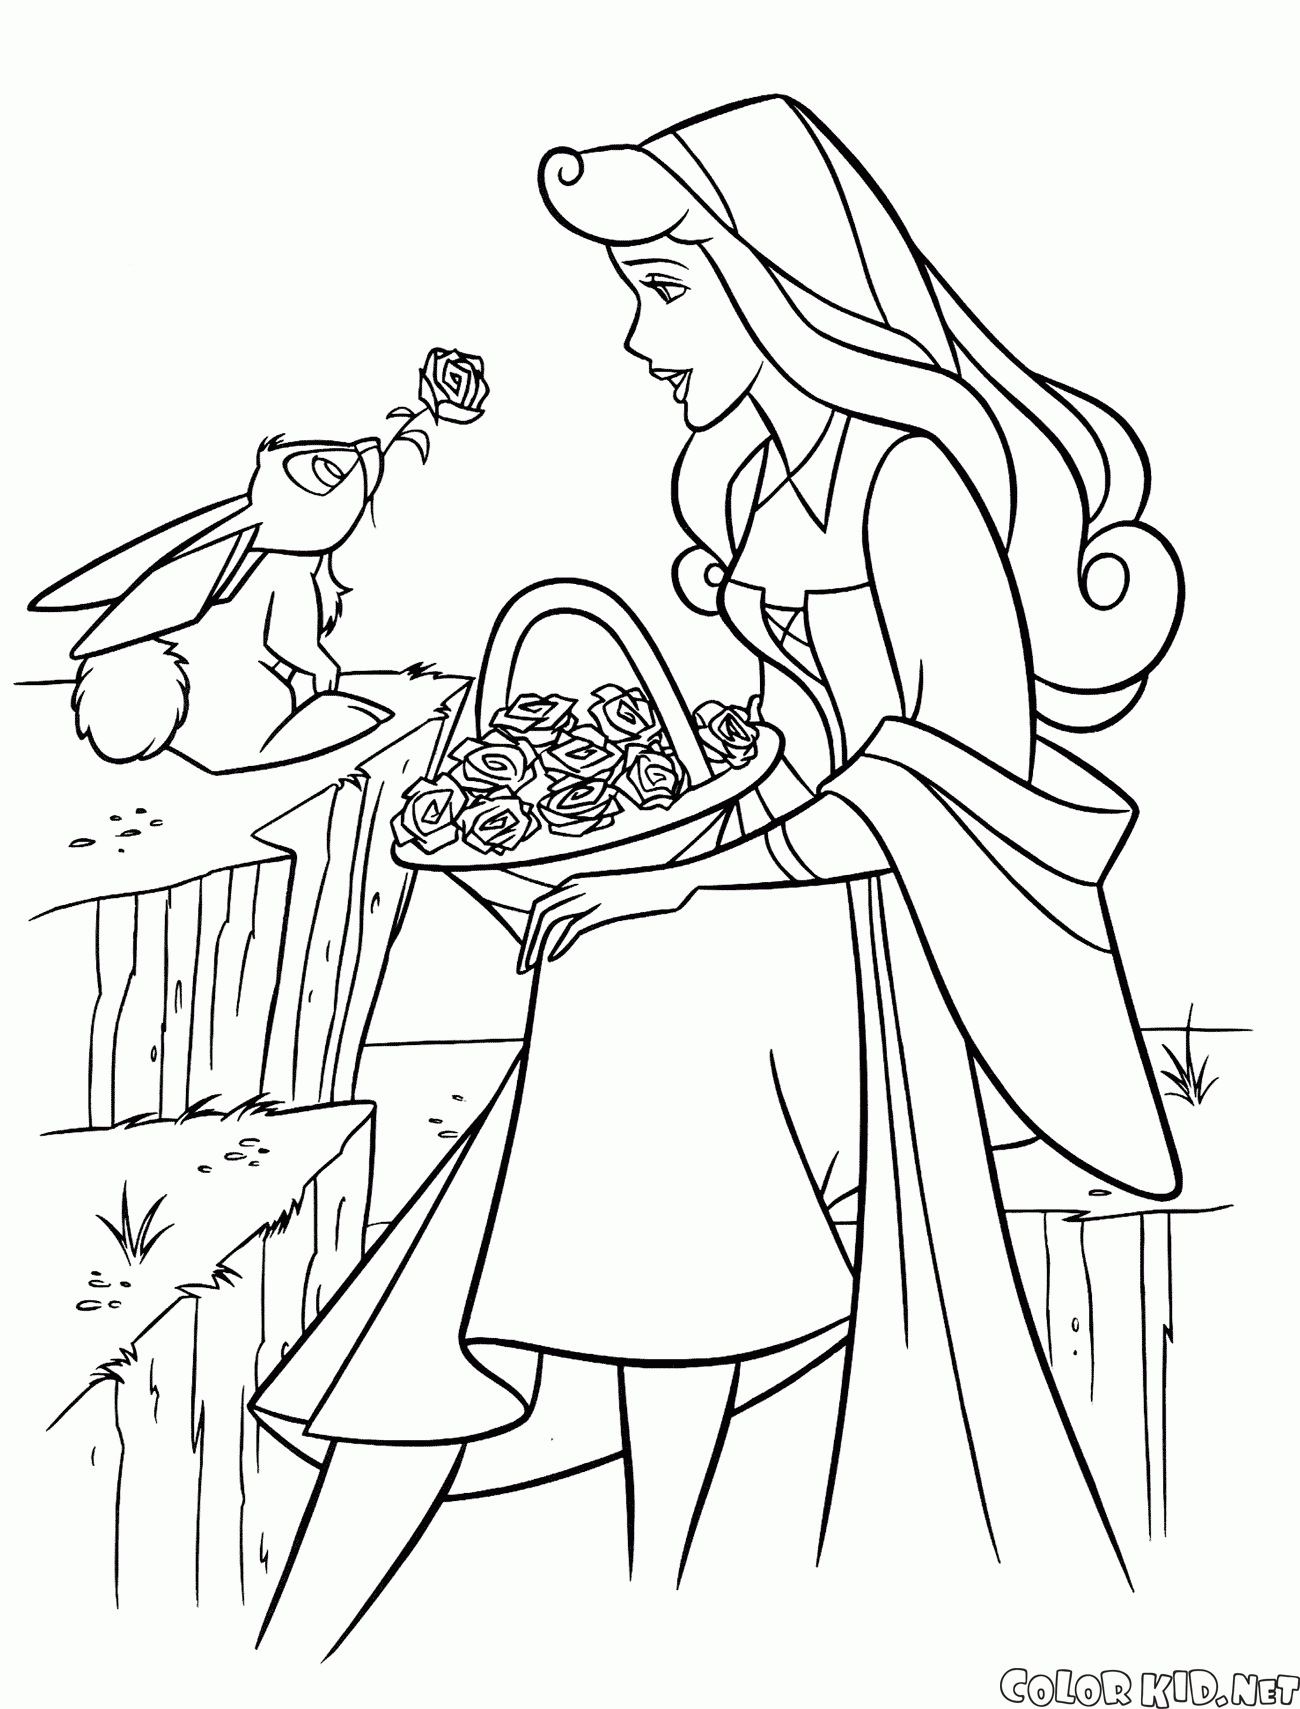 奧羅拉公主和兔子